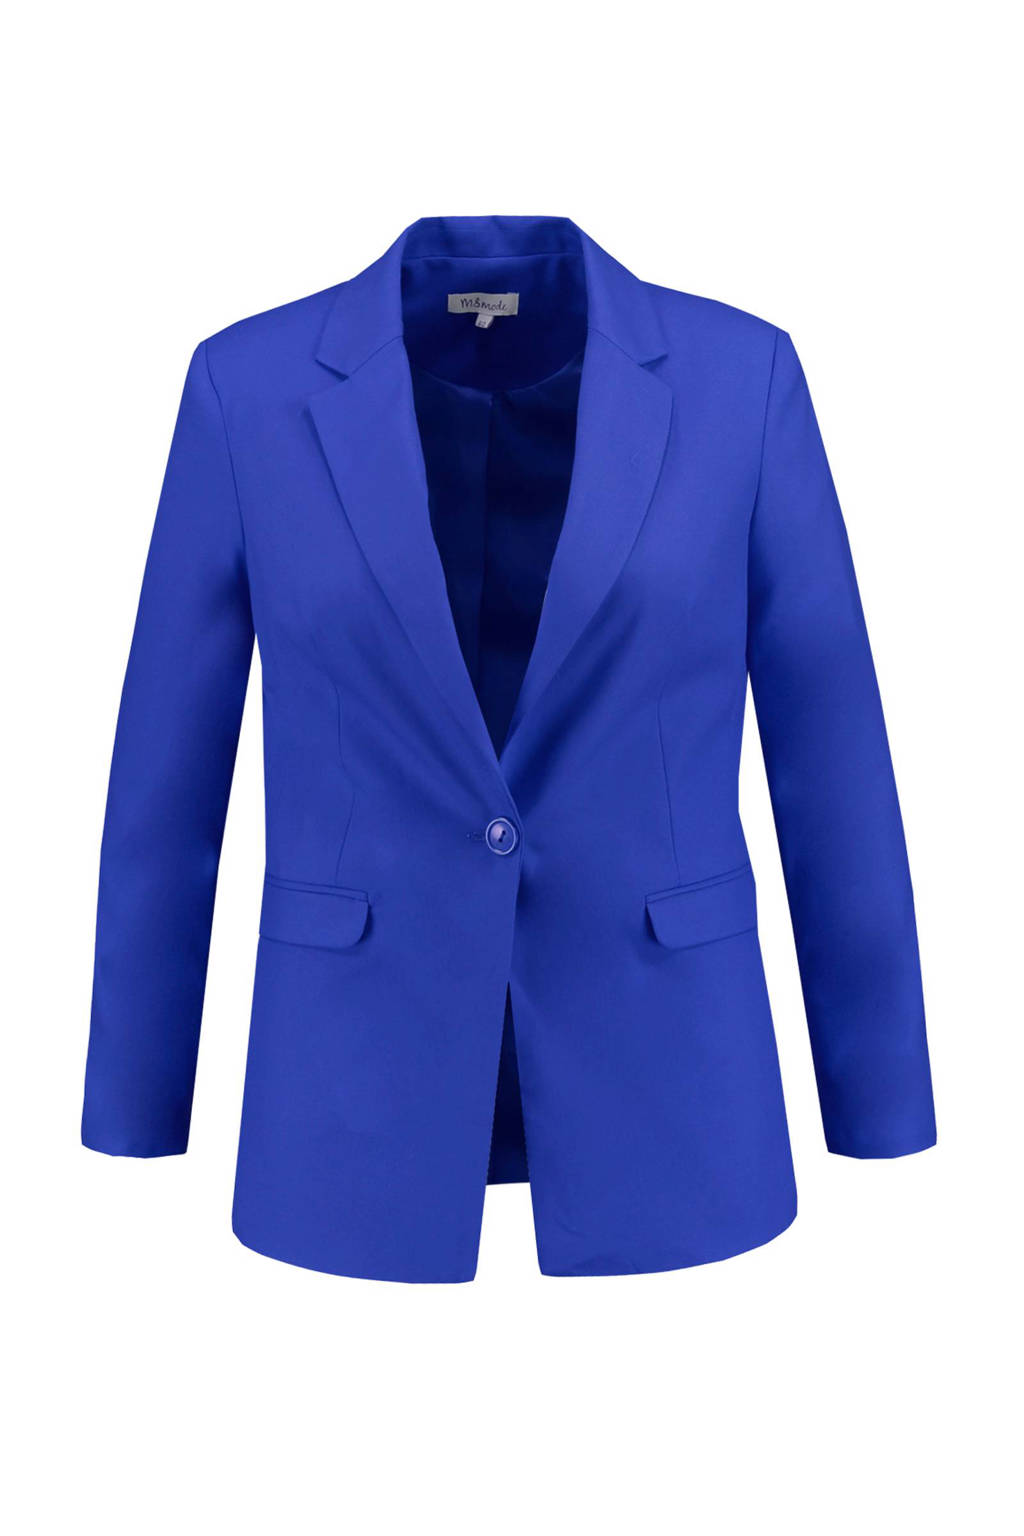 erwt Uitsluiten concept MS Mode blazer kobaltblauw | wehkamp